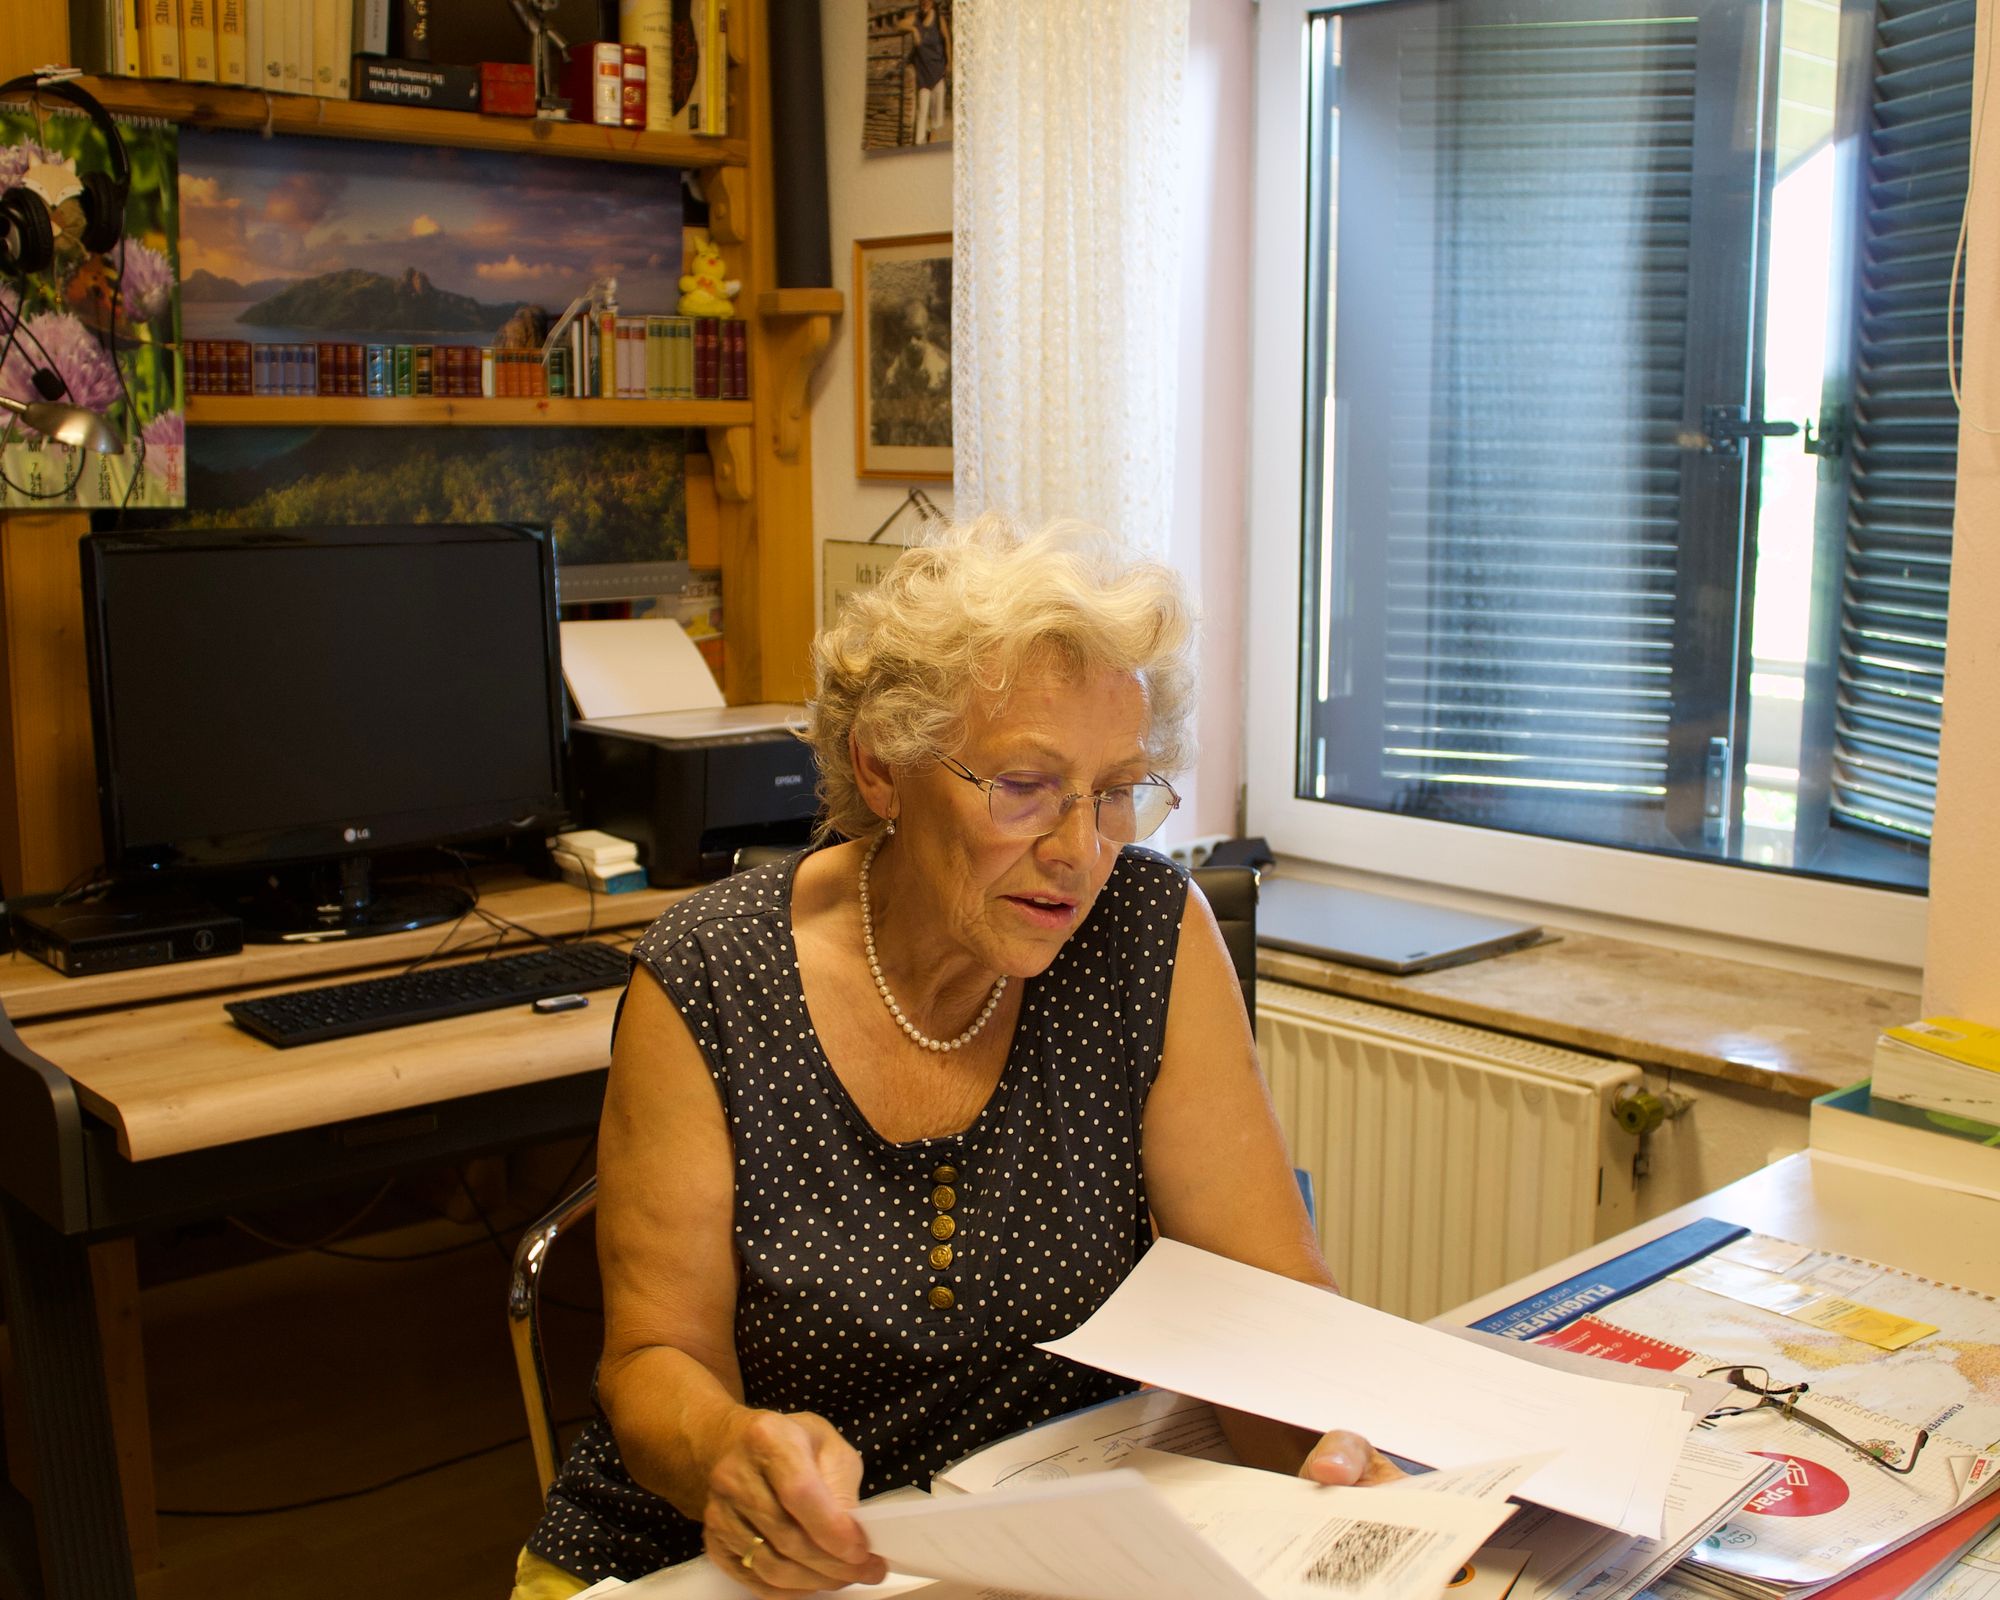 Eine ältere Frau in einem getupften Shirt sitzt an einem Schreibtisch und blättert durch bedruckte Papiere. Im Hintergrund sind ein Bücherregal, ein Computer, ein Drucker und ein Fenster mit geschlossenen Rollos zu sehen.